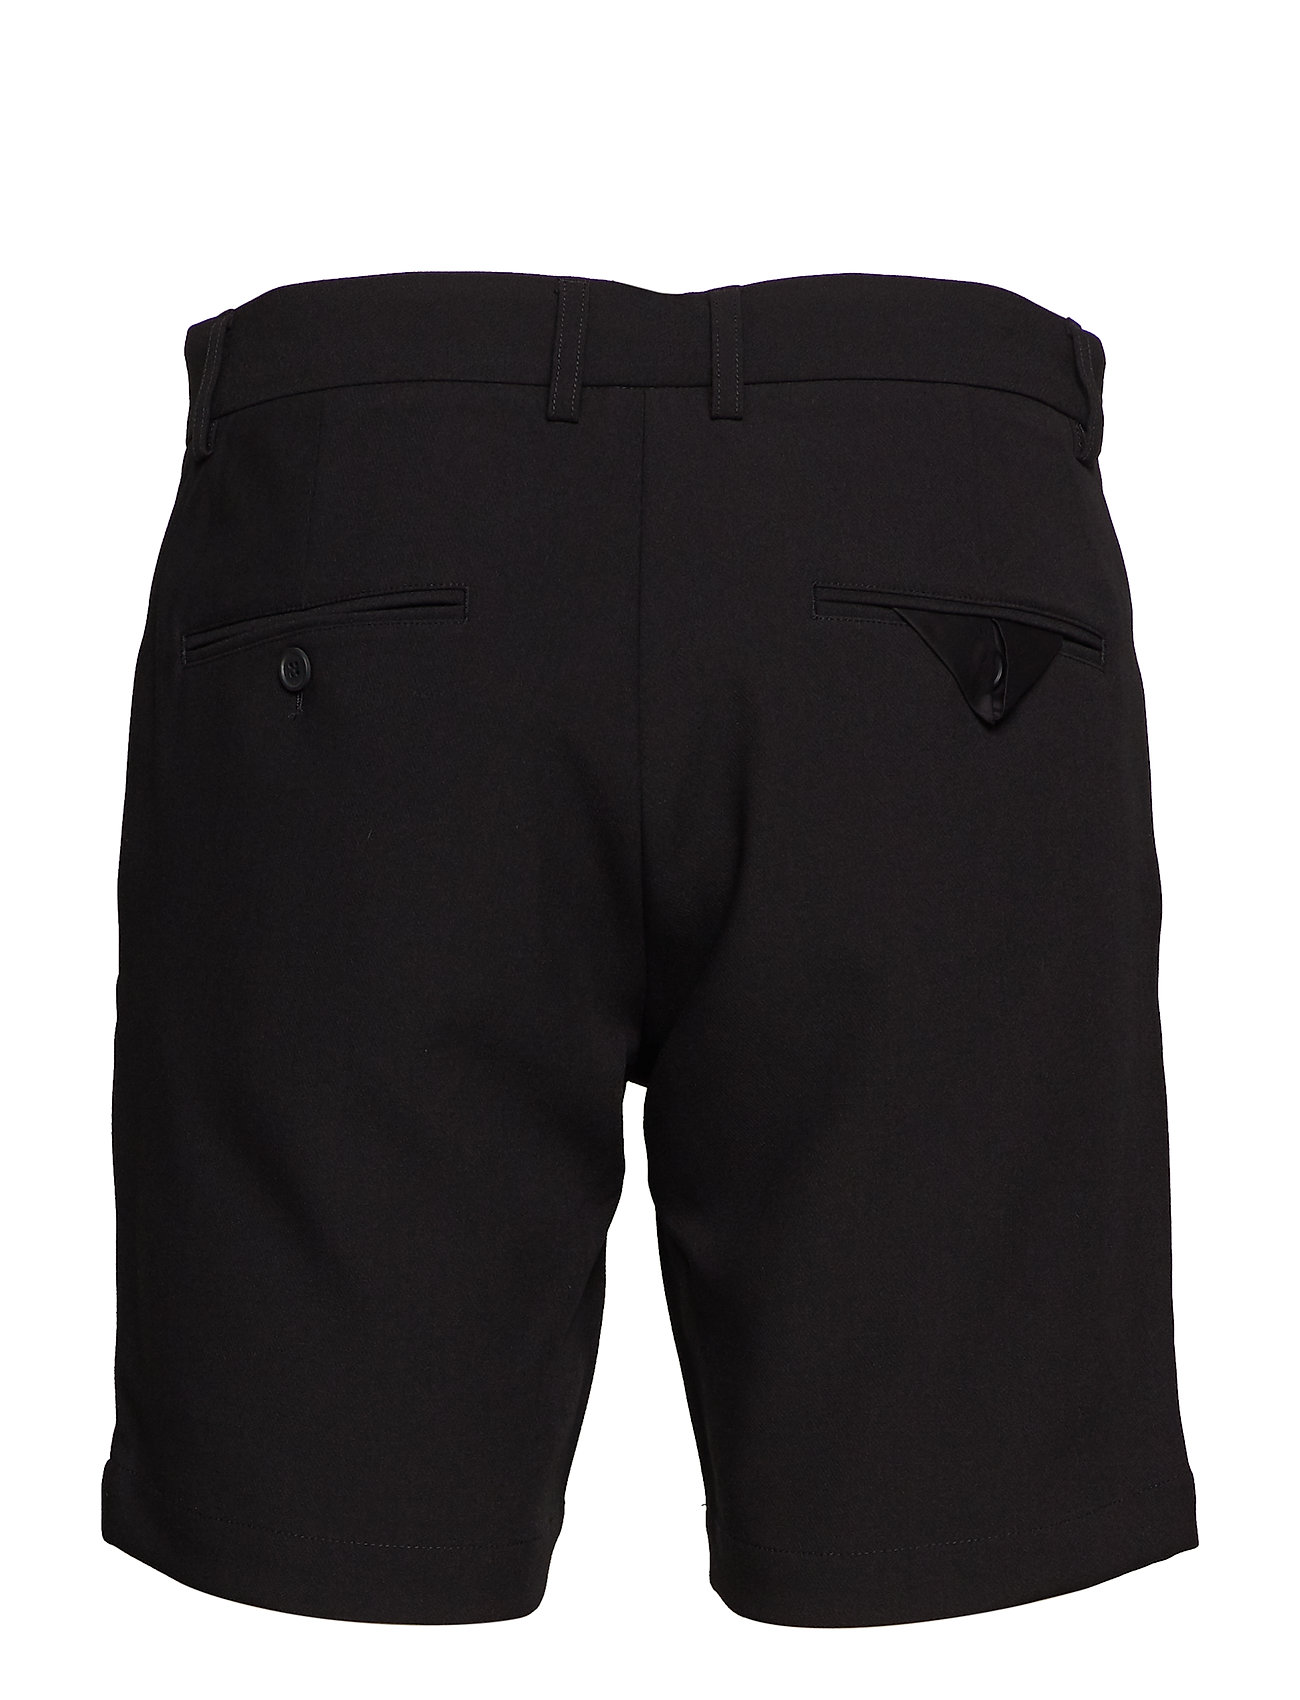 Samsøe Samsøe - Hals shorts 10929 - casual shorts - black - 1